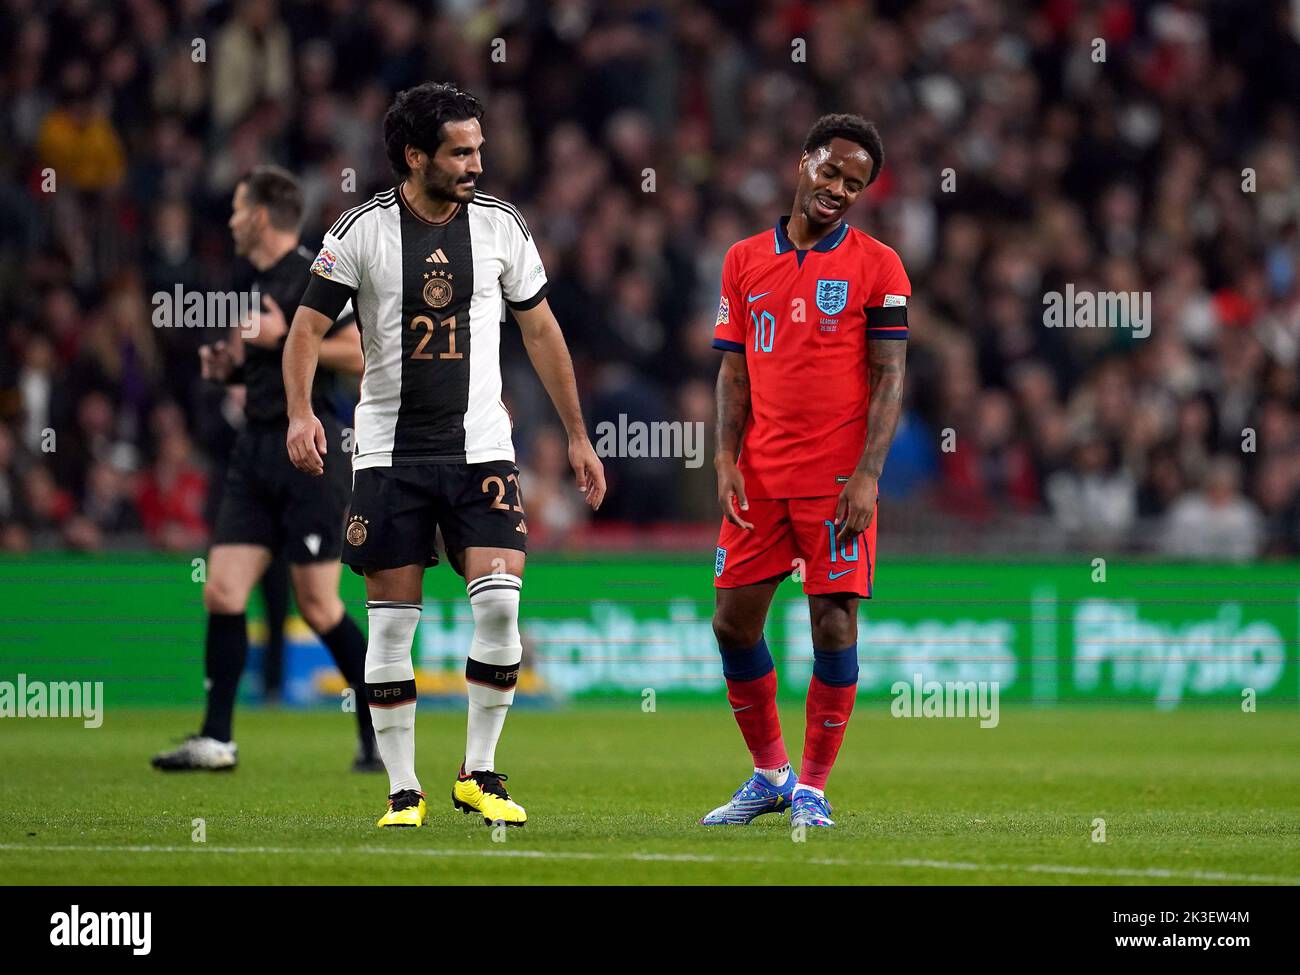 El británico Raheem Sterling reacciona durante el partido de la Liga de las Naciones de la UEFA en el estadio de Wembley, Londres. Fecha de la foto: Lunes 26 de septiembre de 2022. Foto de stock